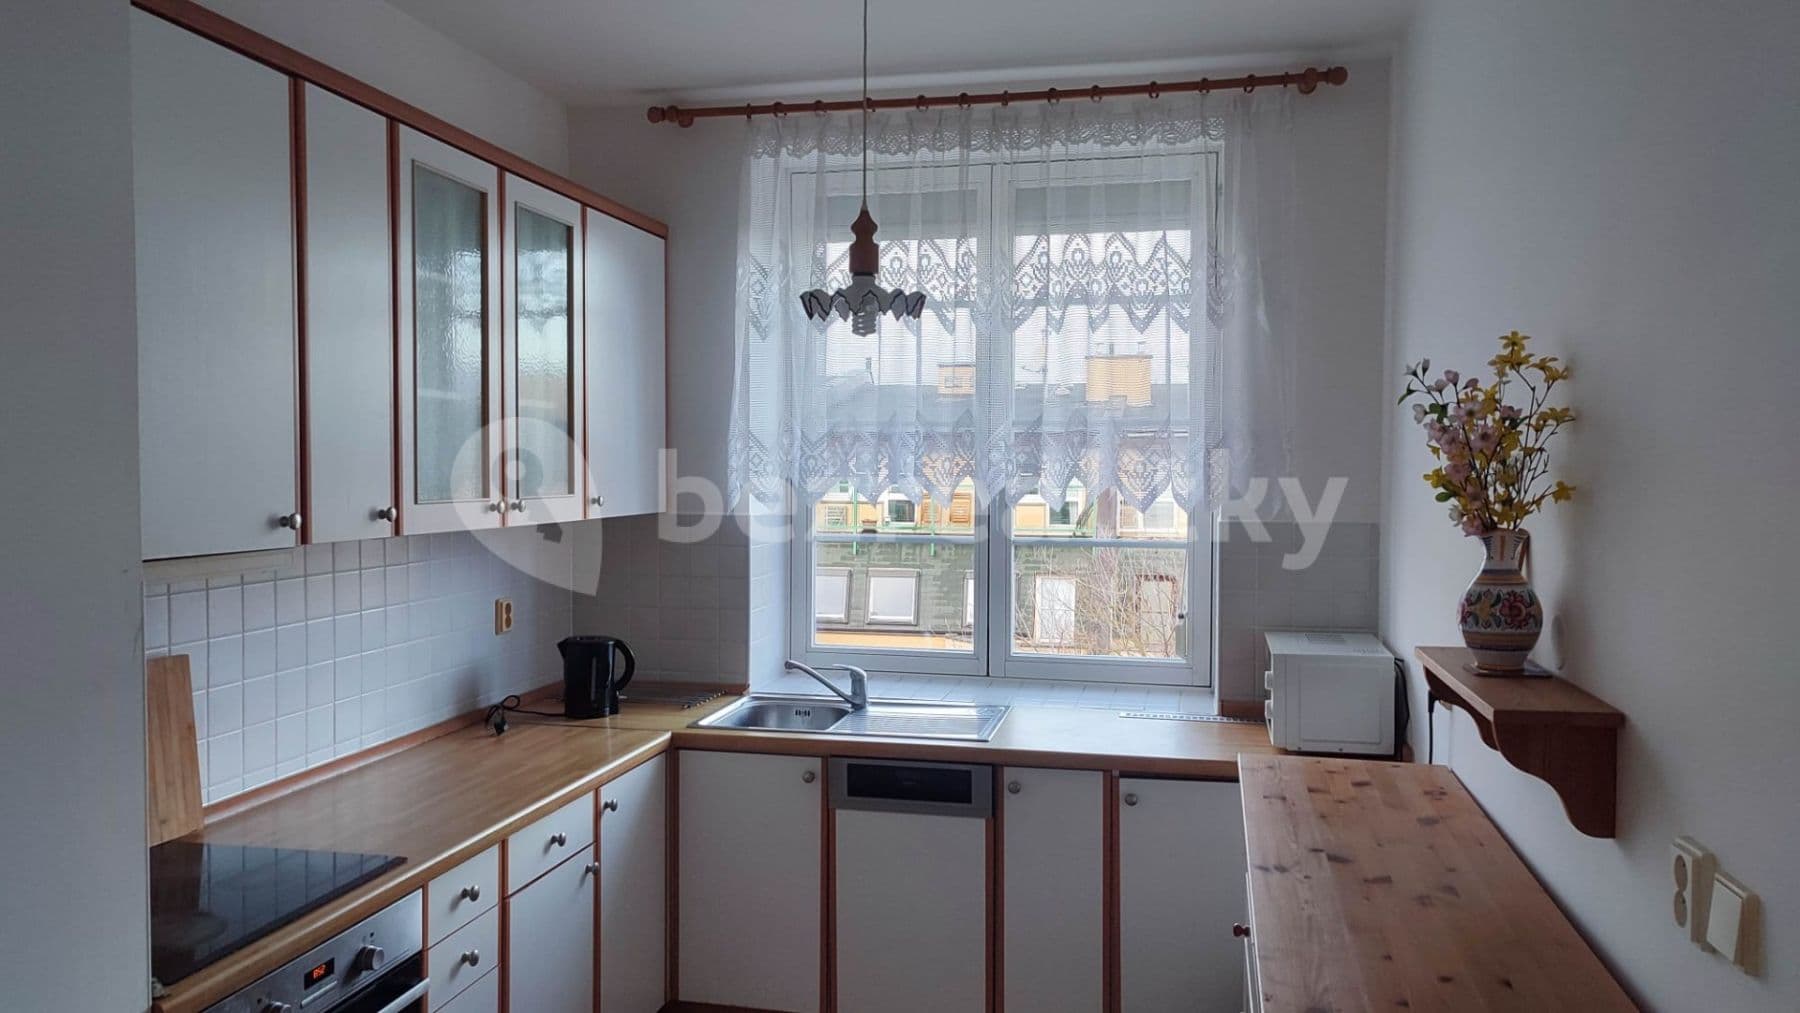 2 bedroom with open-plan kitchen flat to rent, 100 m², Pláničkova, Prague, Prague